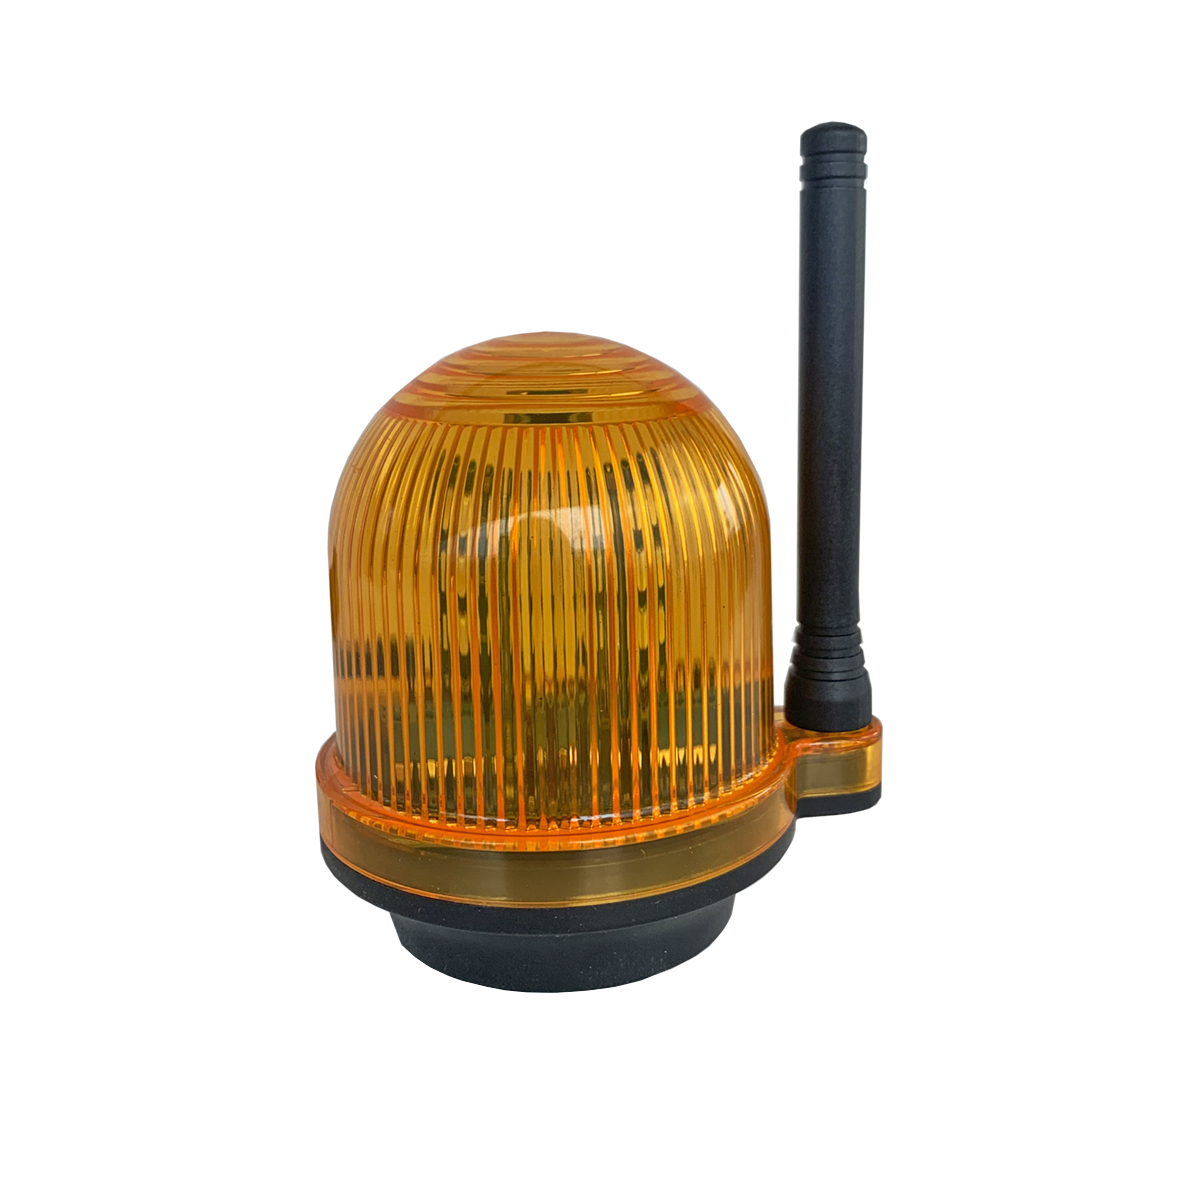 Сигнальная лампа с звуковым сигналом для промышленных объектов Nord Ice YS-111